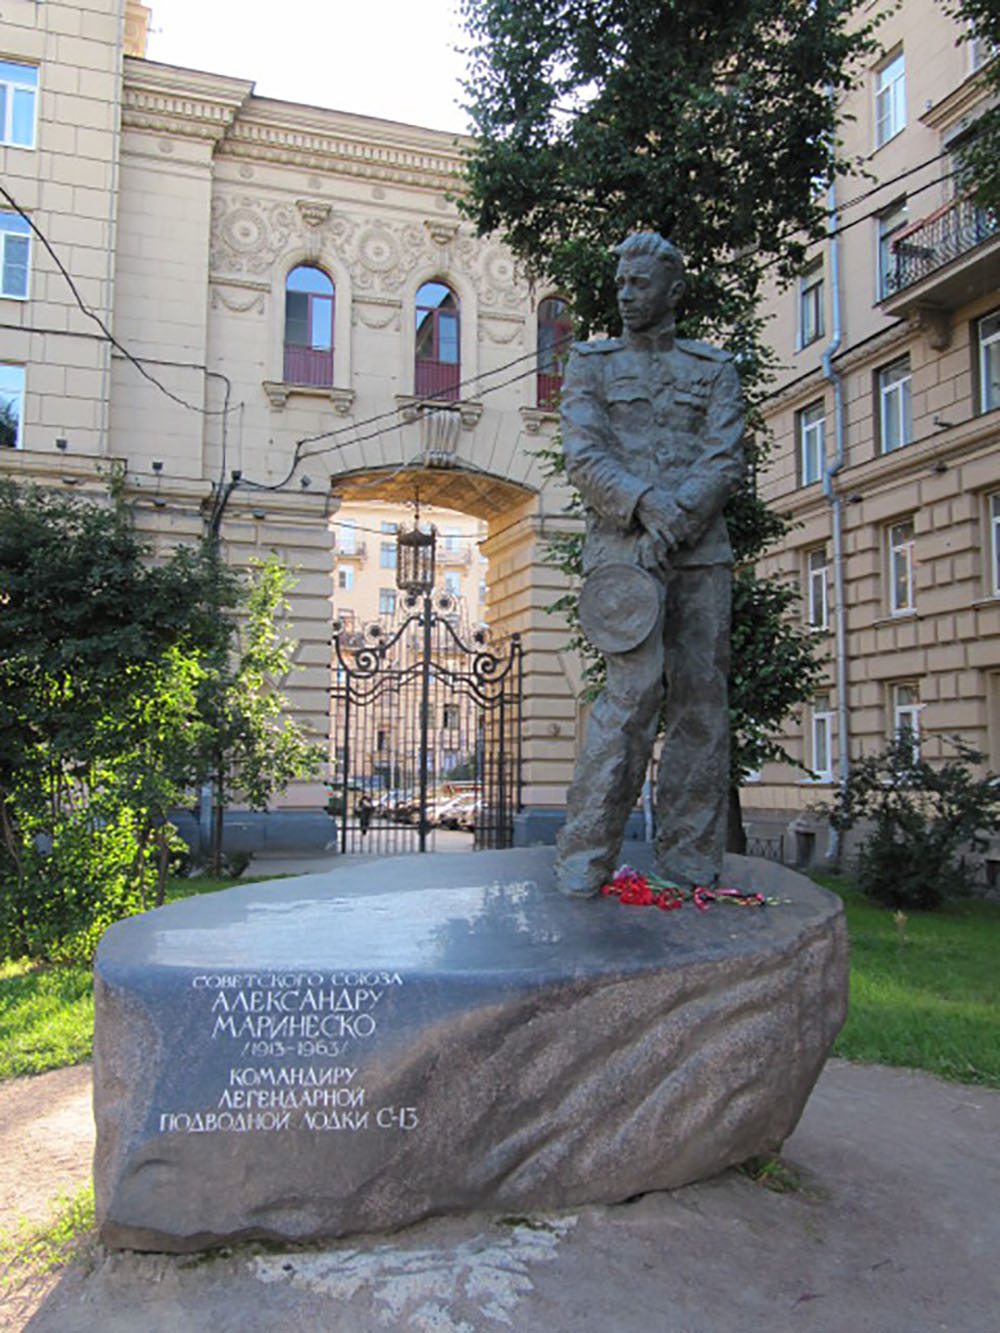 Monument Alexander Marinesko